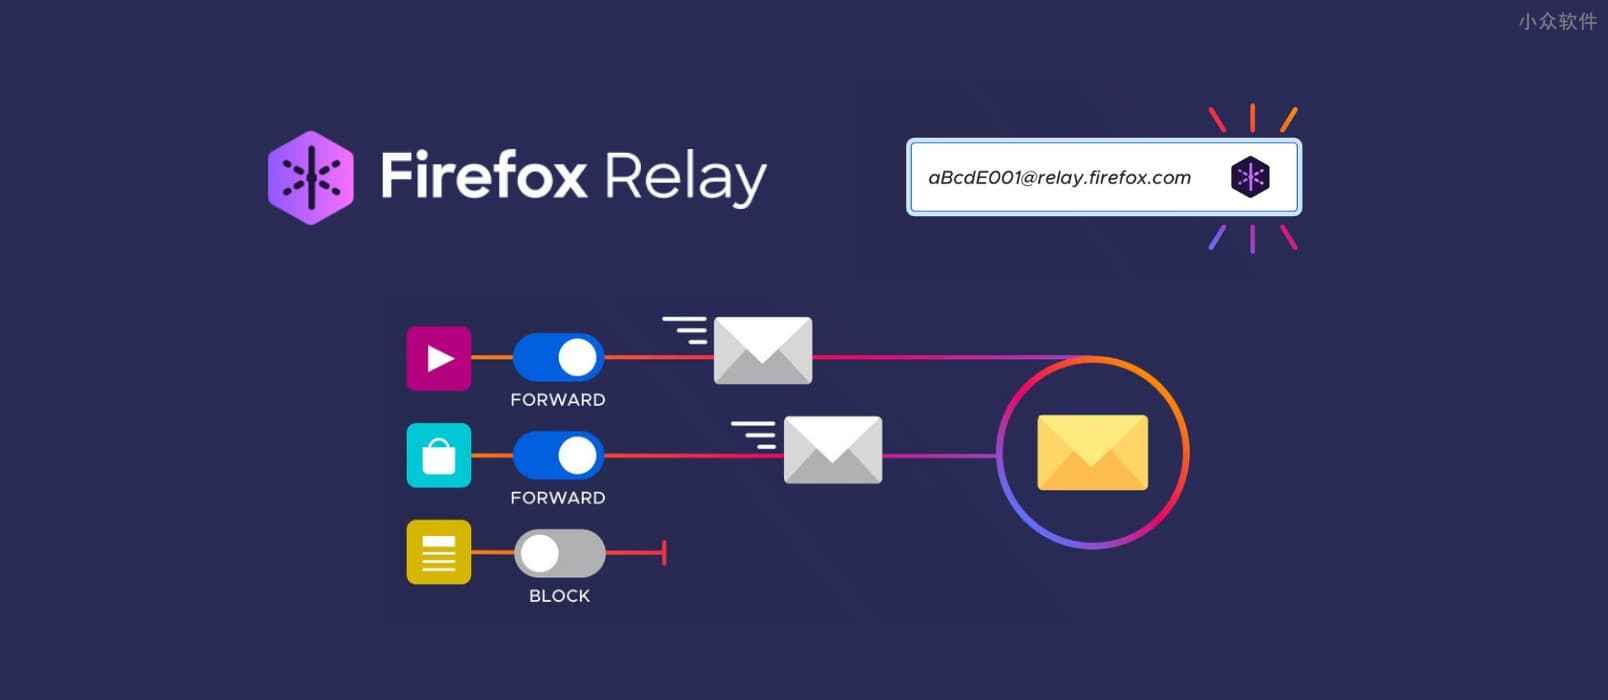 Firefox Relay - 免费提供 5 个临时邮箱地址，用来转发邮件，扩展算半成品？ 1